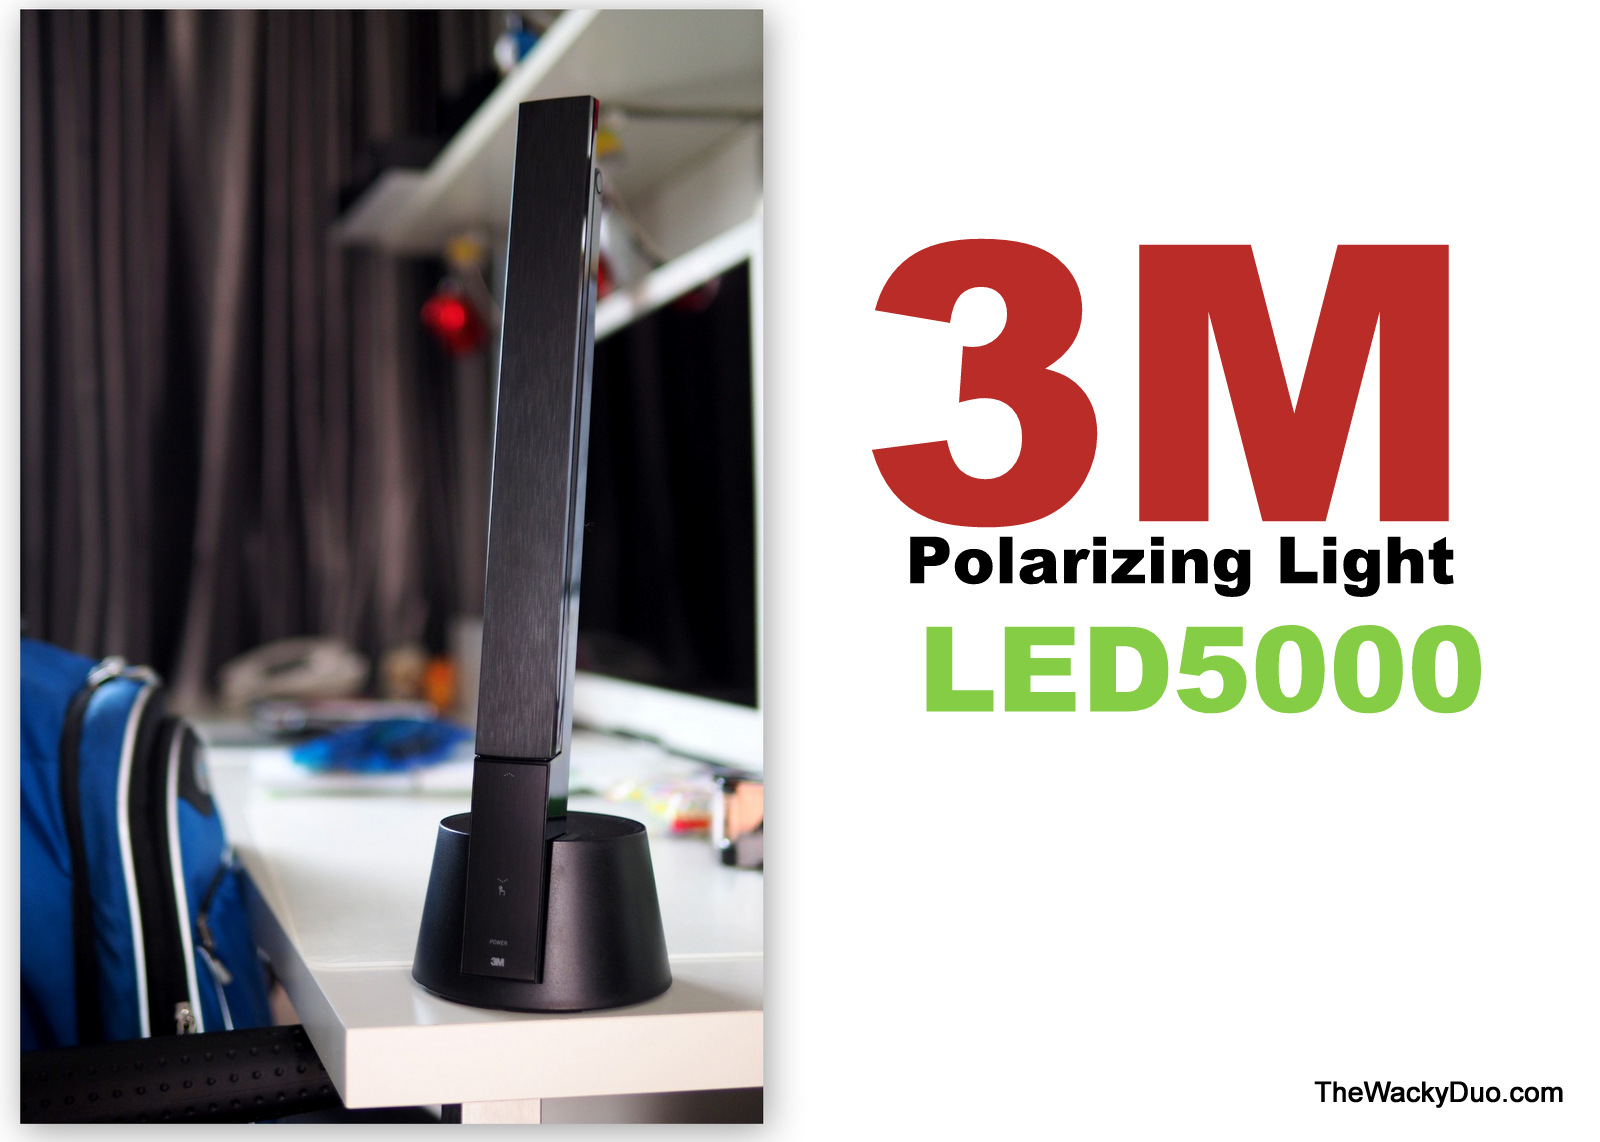 3M LED5000 Polorizing Light : Choosing the right desk lamp